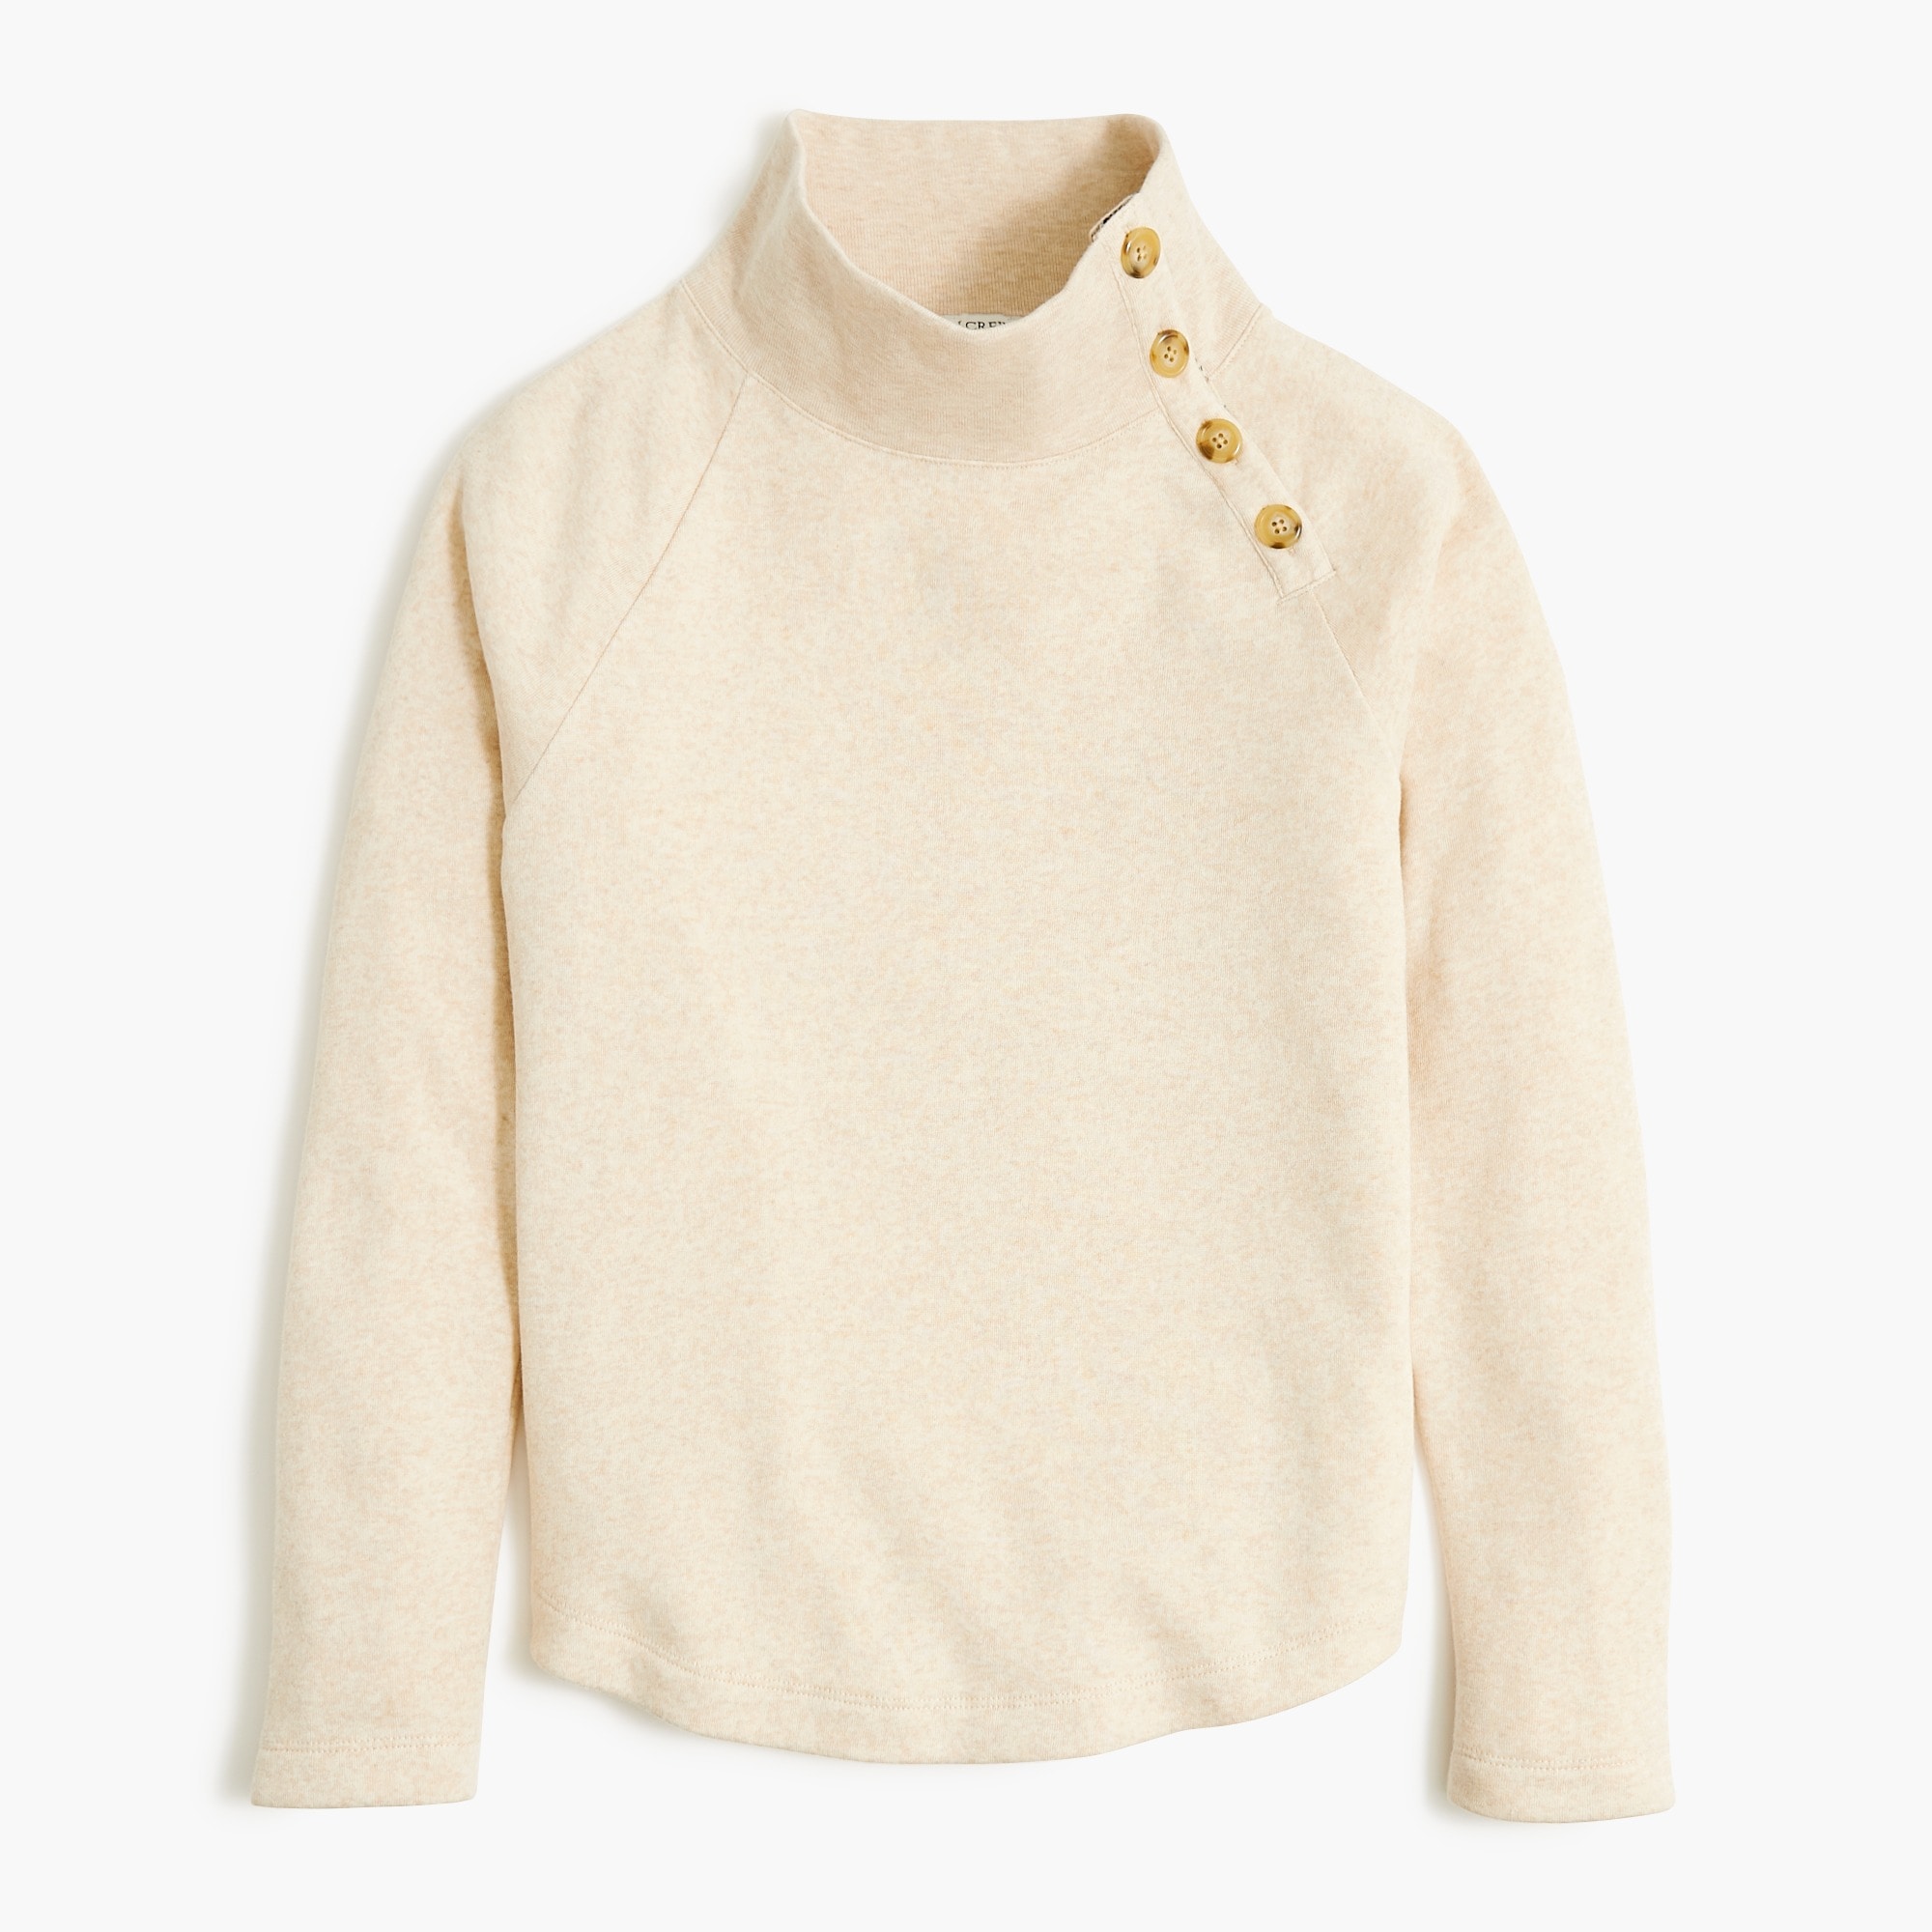  Wide button-collar pullover sweatshirt